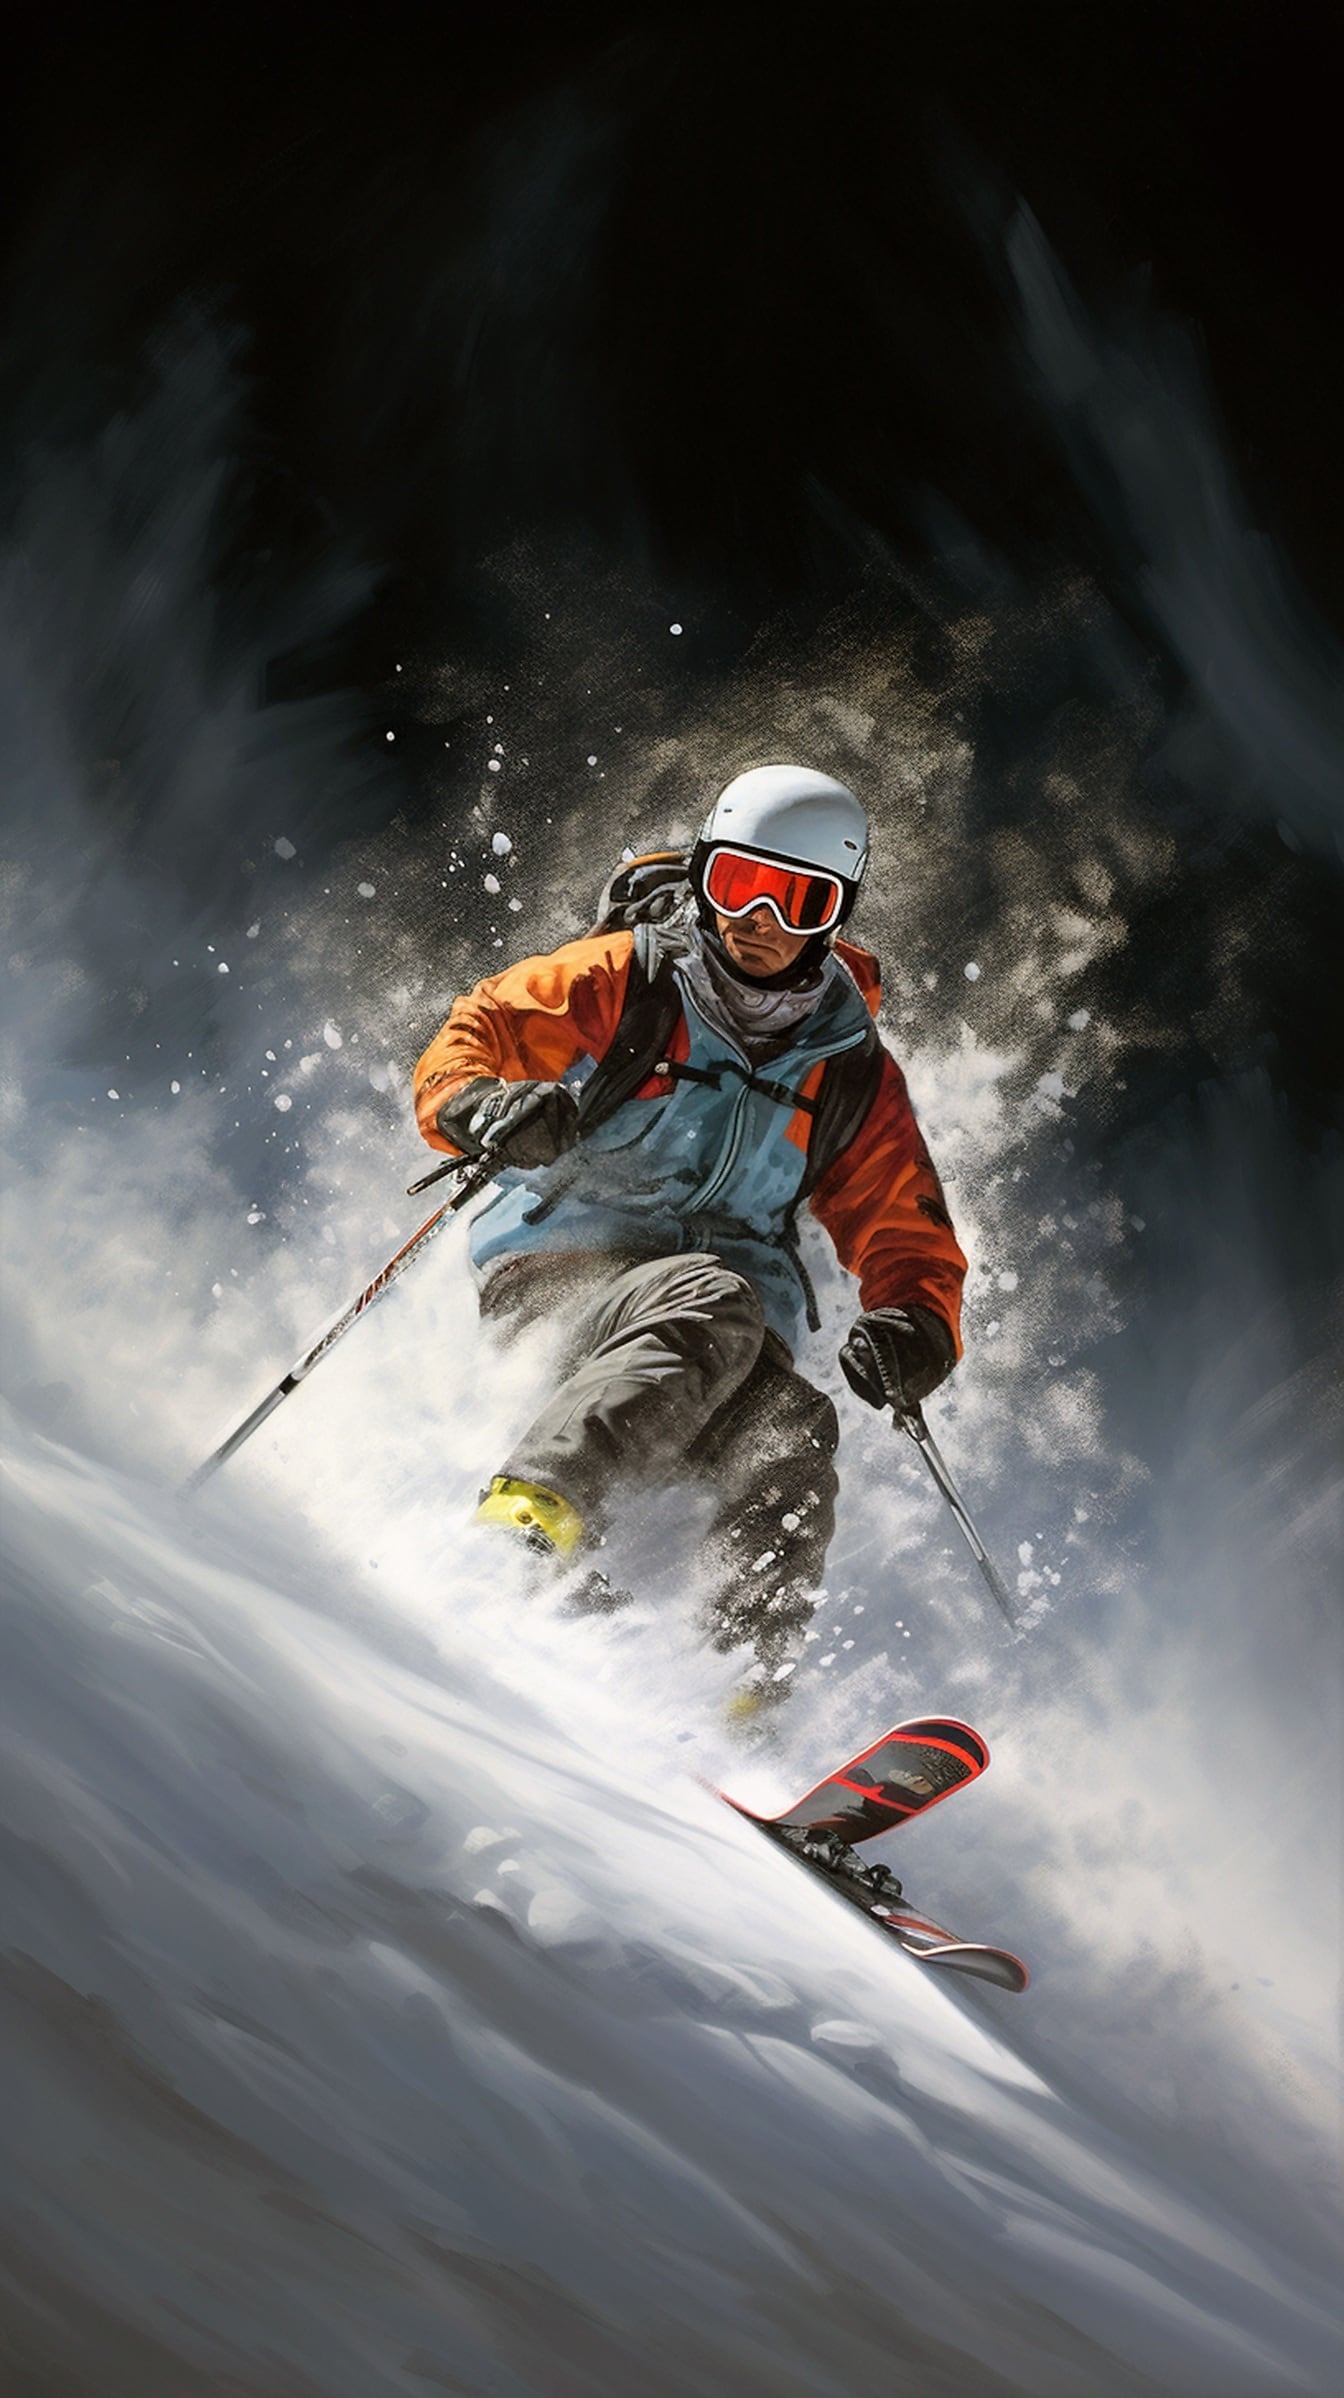 Karlı dağ yamacında kayak yapan adam aşırı kayakçı